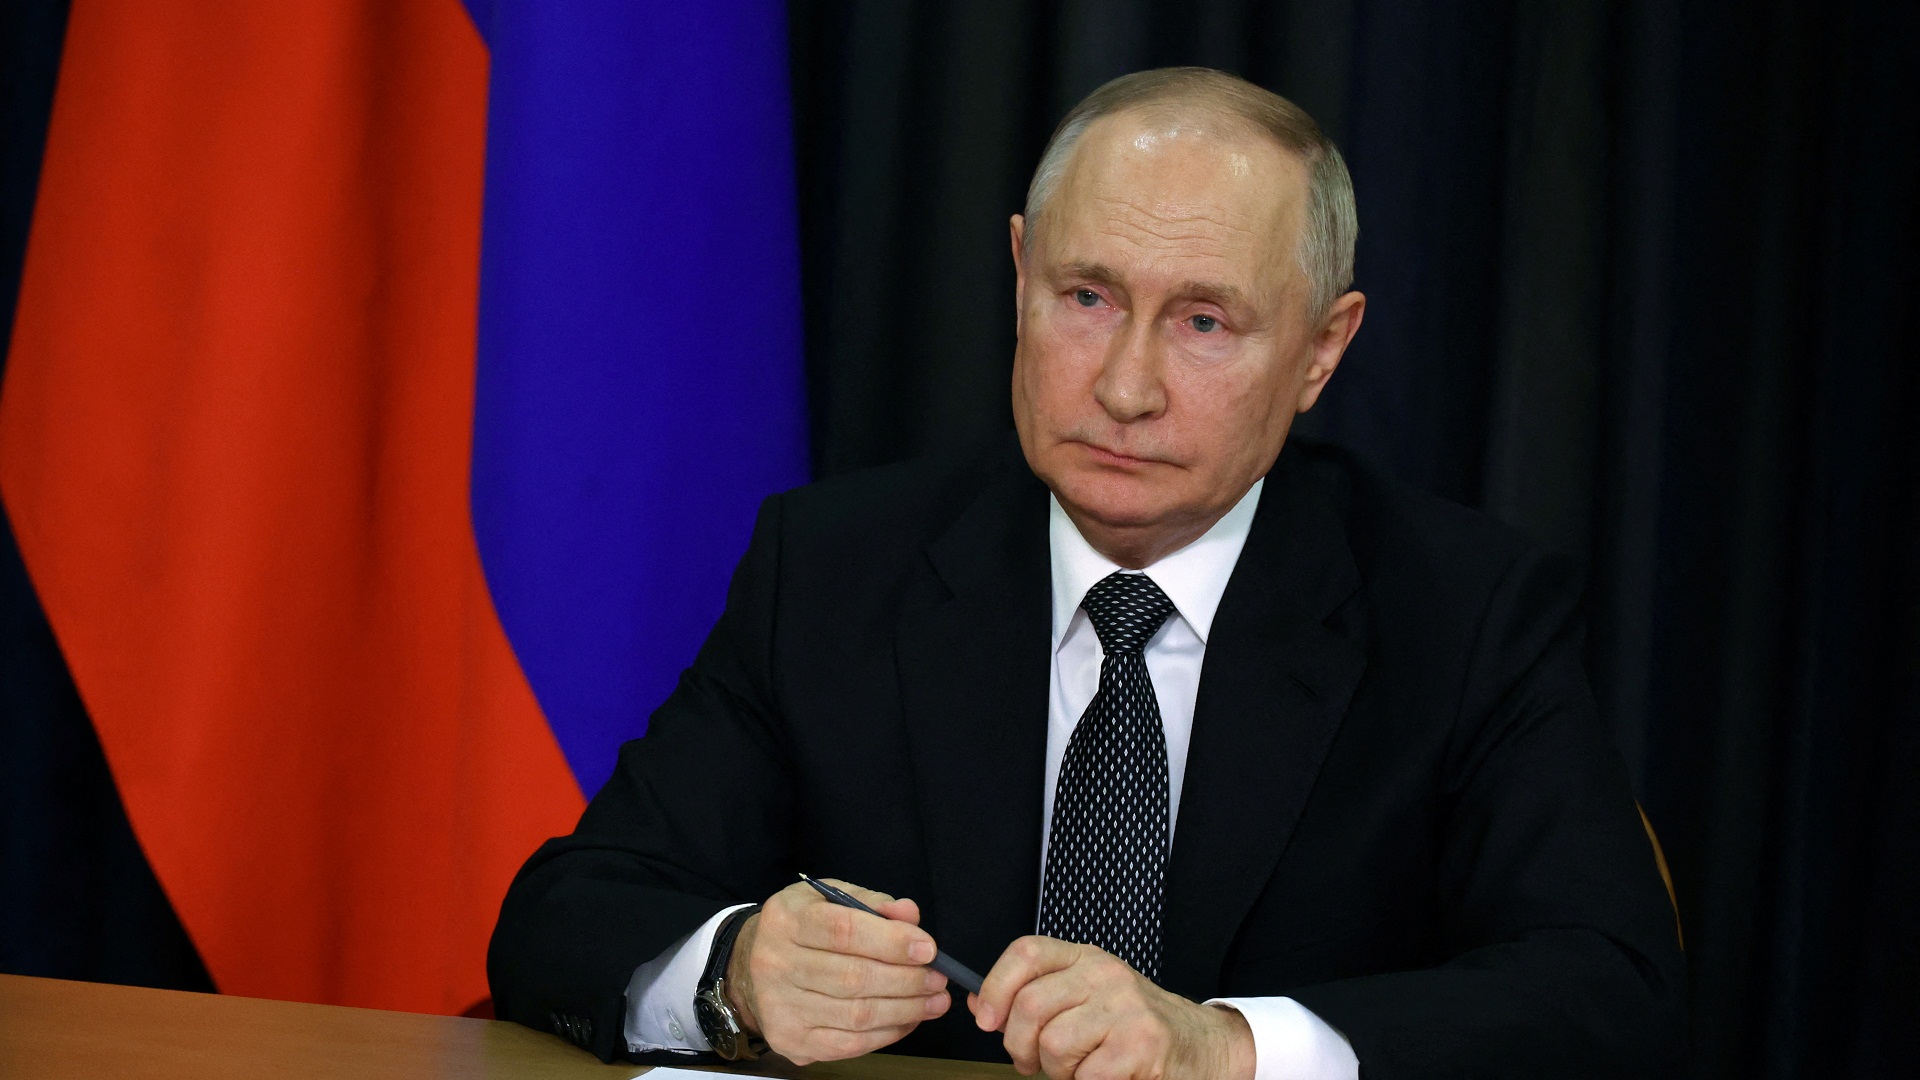 Β.Πούτιν: «Η συνεργασία της Μόσχας με το Βερολίνο διαταράχθηκε λόγω των εκρήξεων στους αγωγούς Nord Stream»